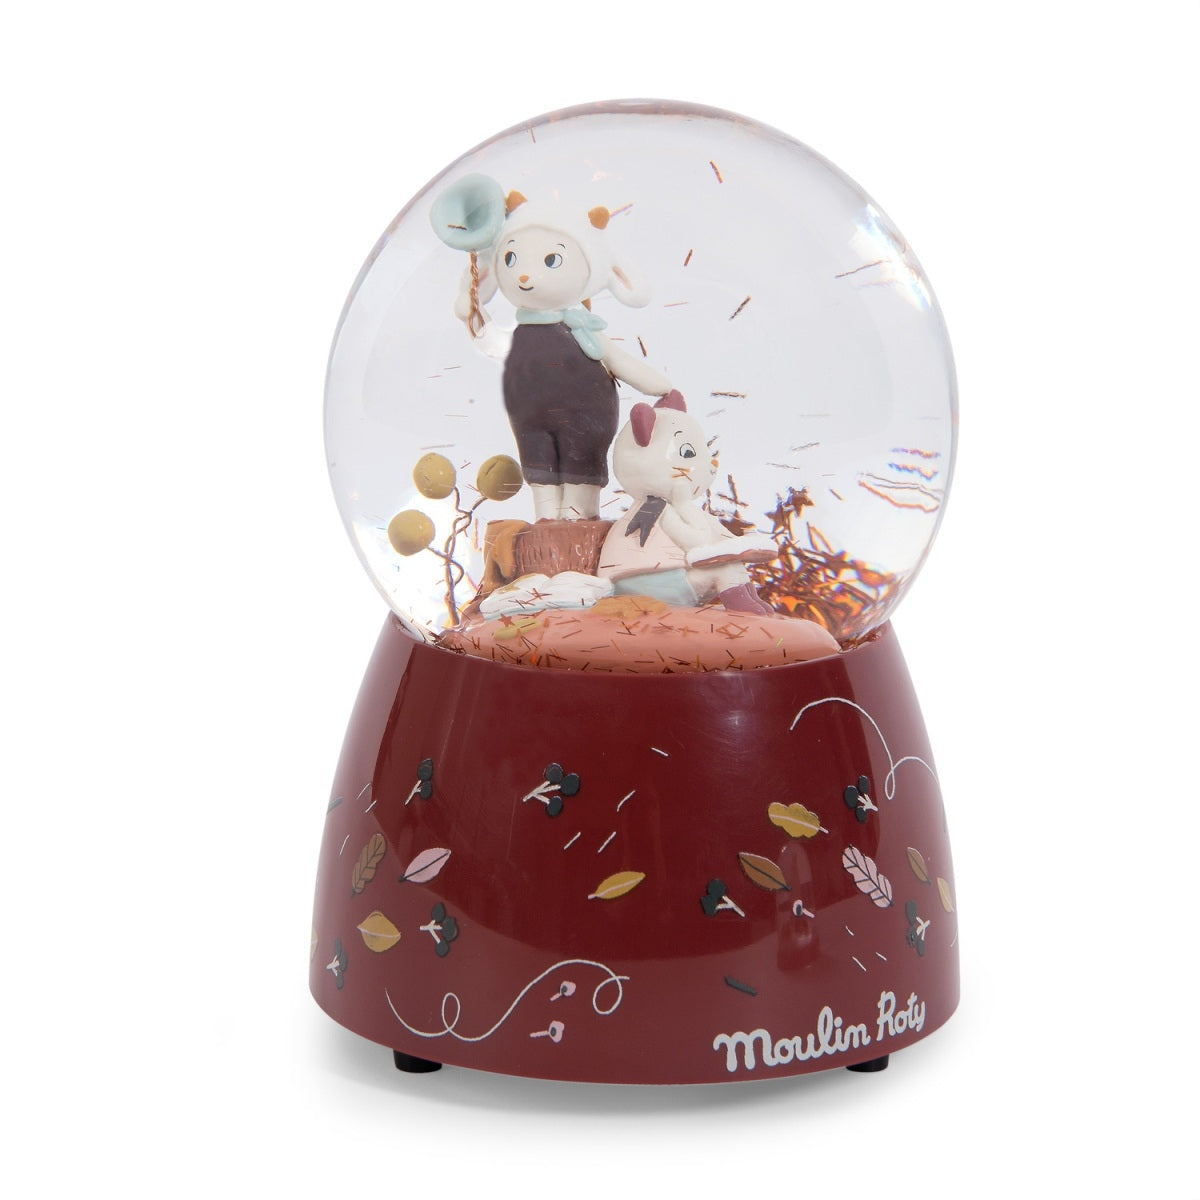 Die Moulin Roty Schneekugel mit Musik aus der "Après la pluie" Serie ist eine süße Spieluhr für Kinder ab 3 Jahre.